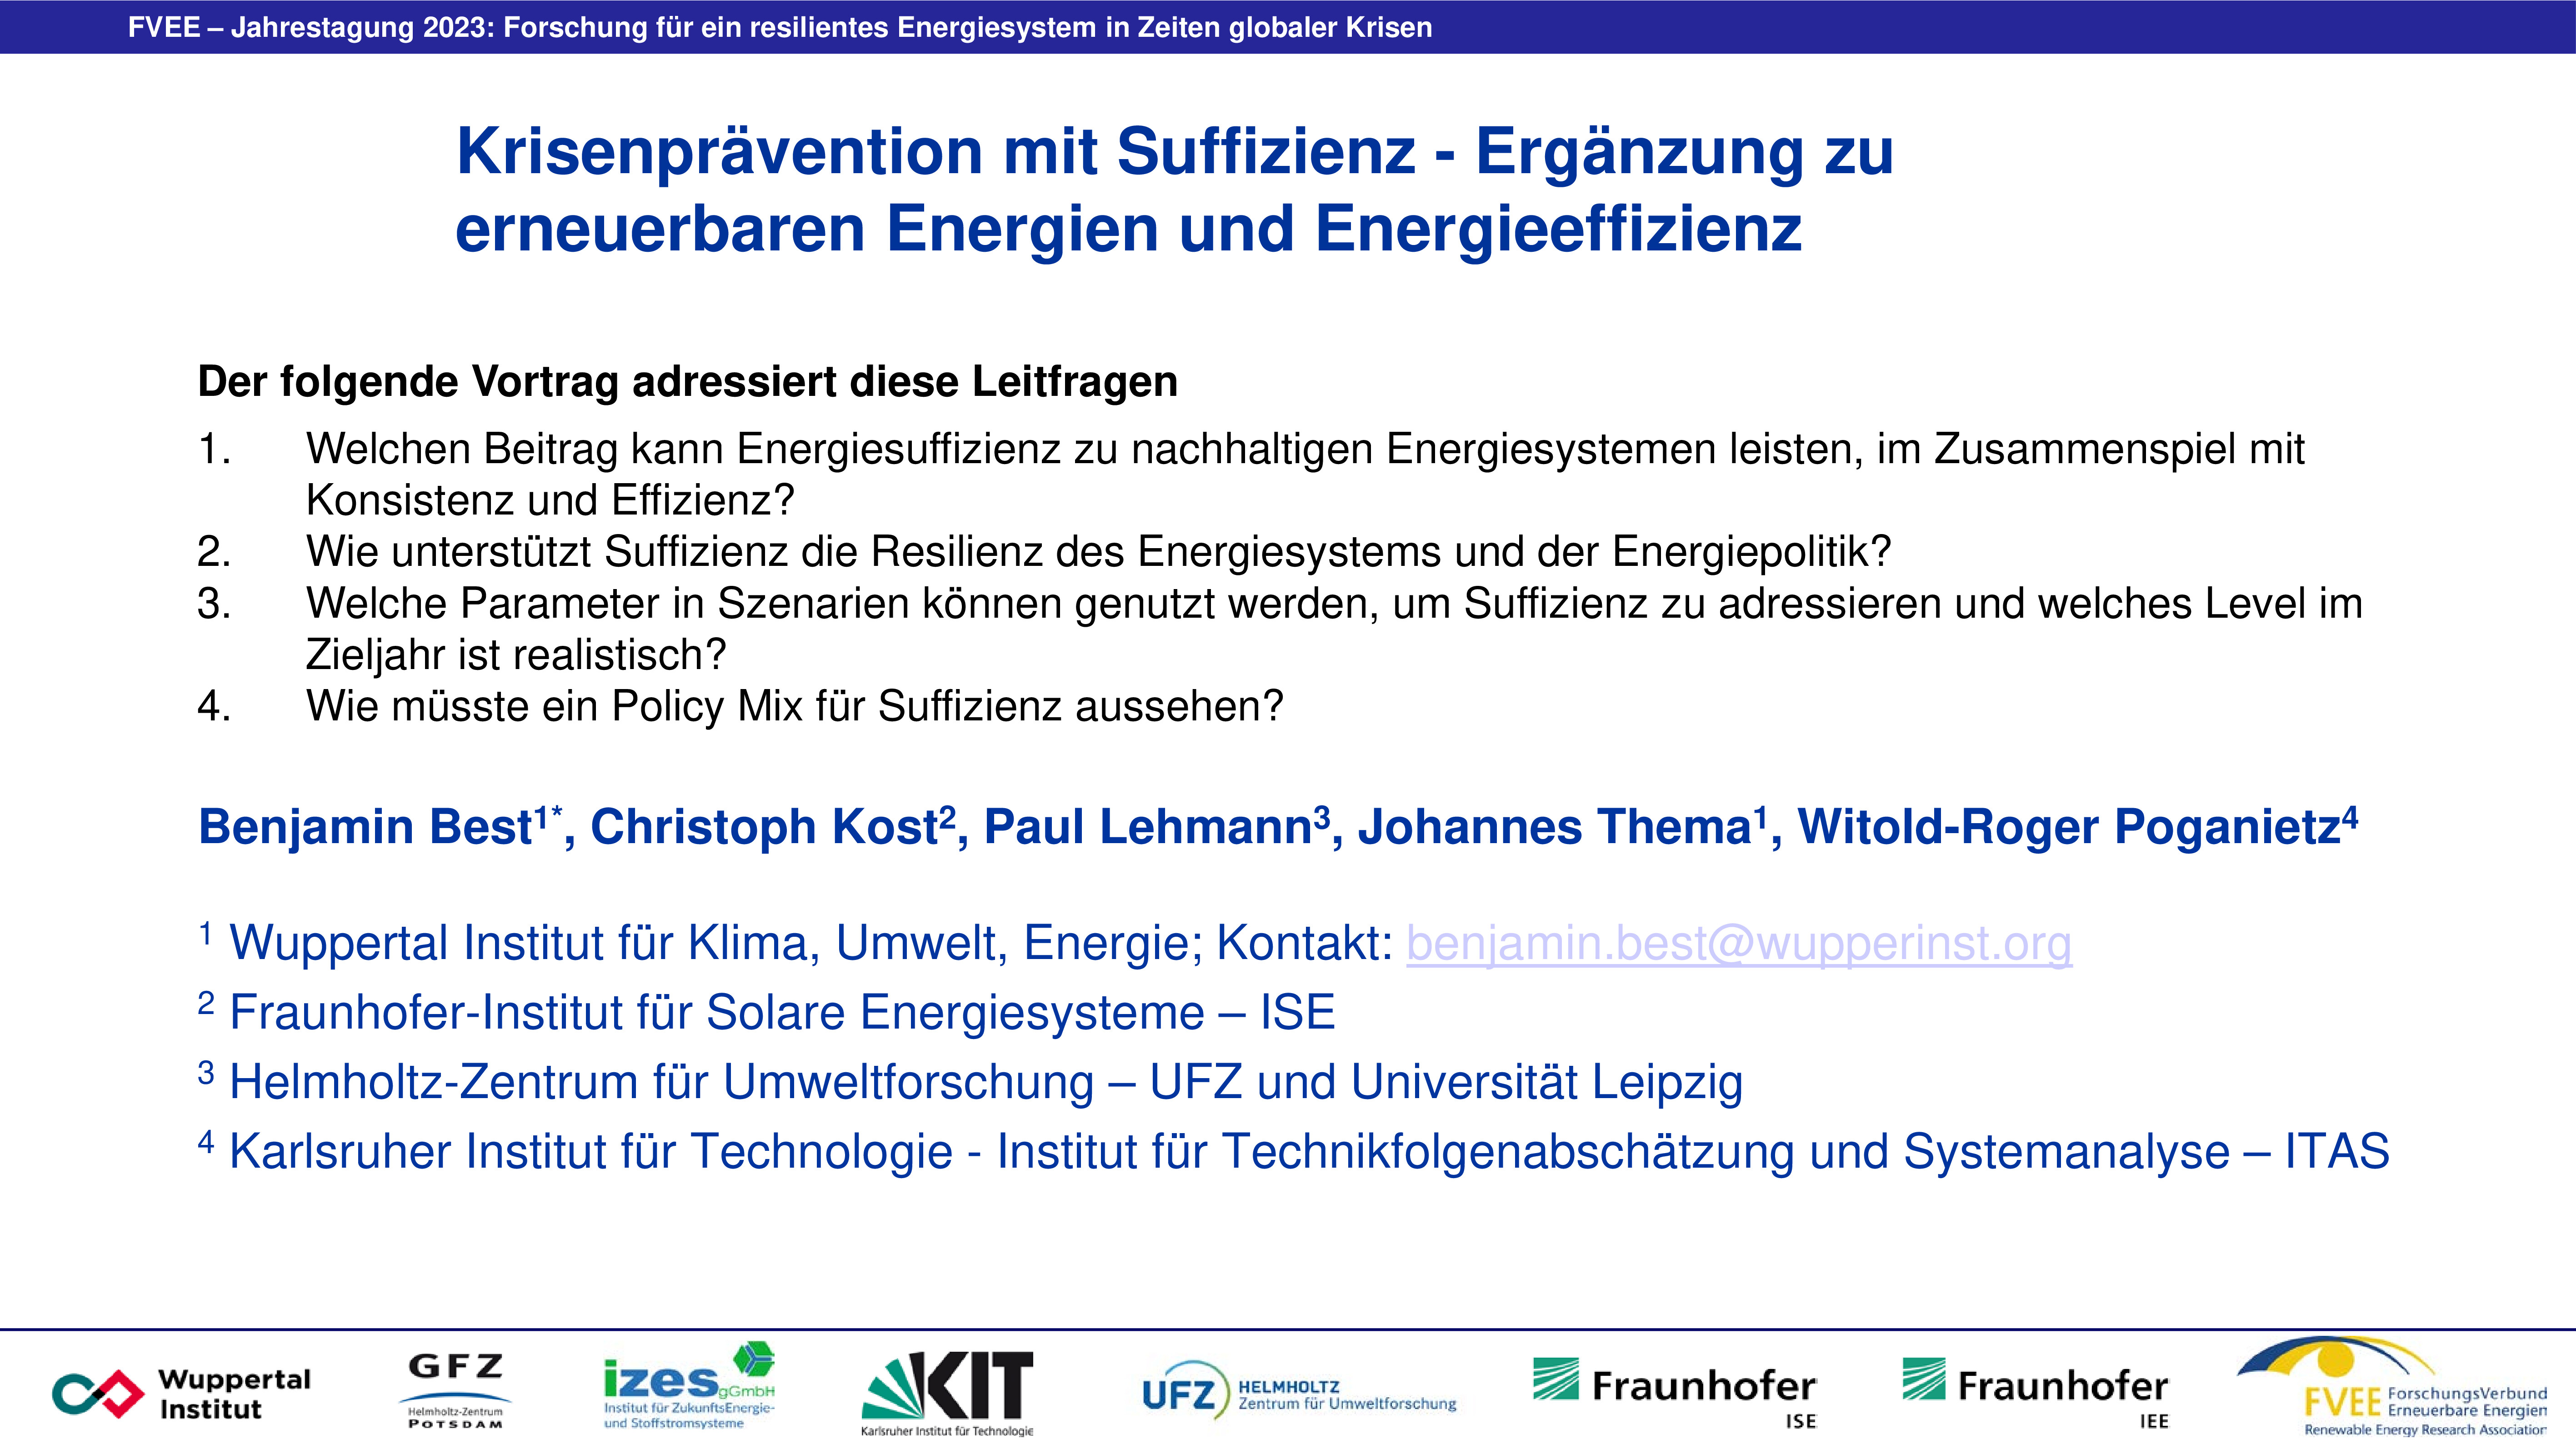 Krisenprävention mit Suffizienz - Ergänzung zu erneuerbaren Energien und Energieeffizienz (Best - Wuppertal Institut)